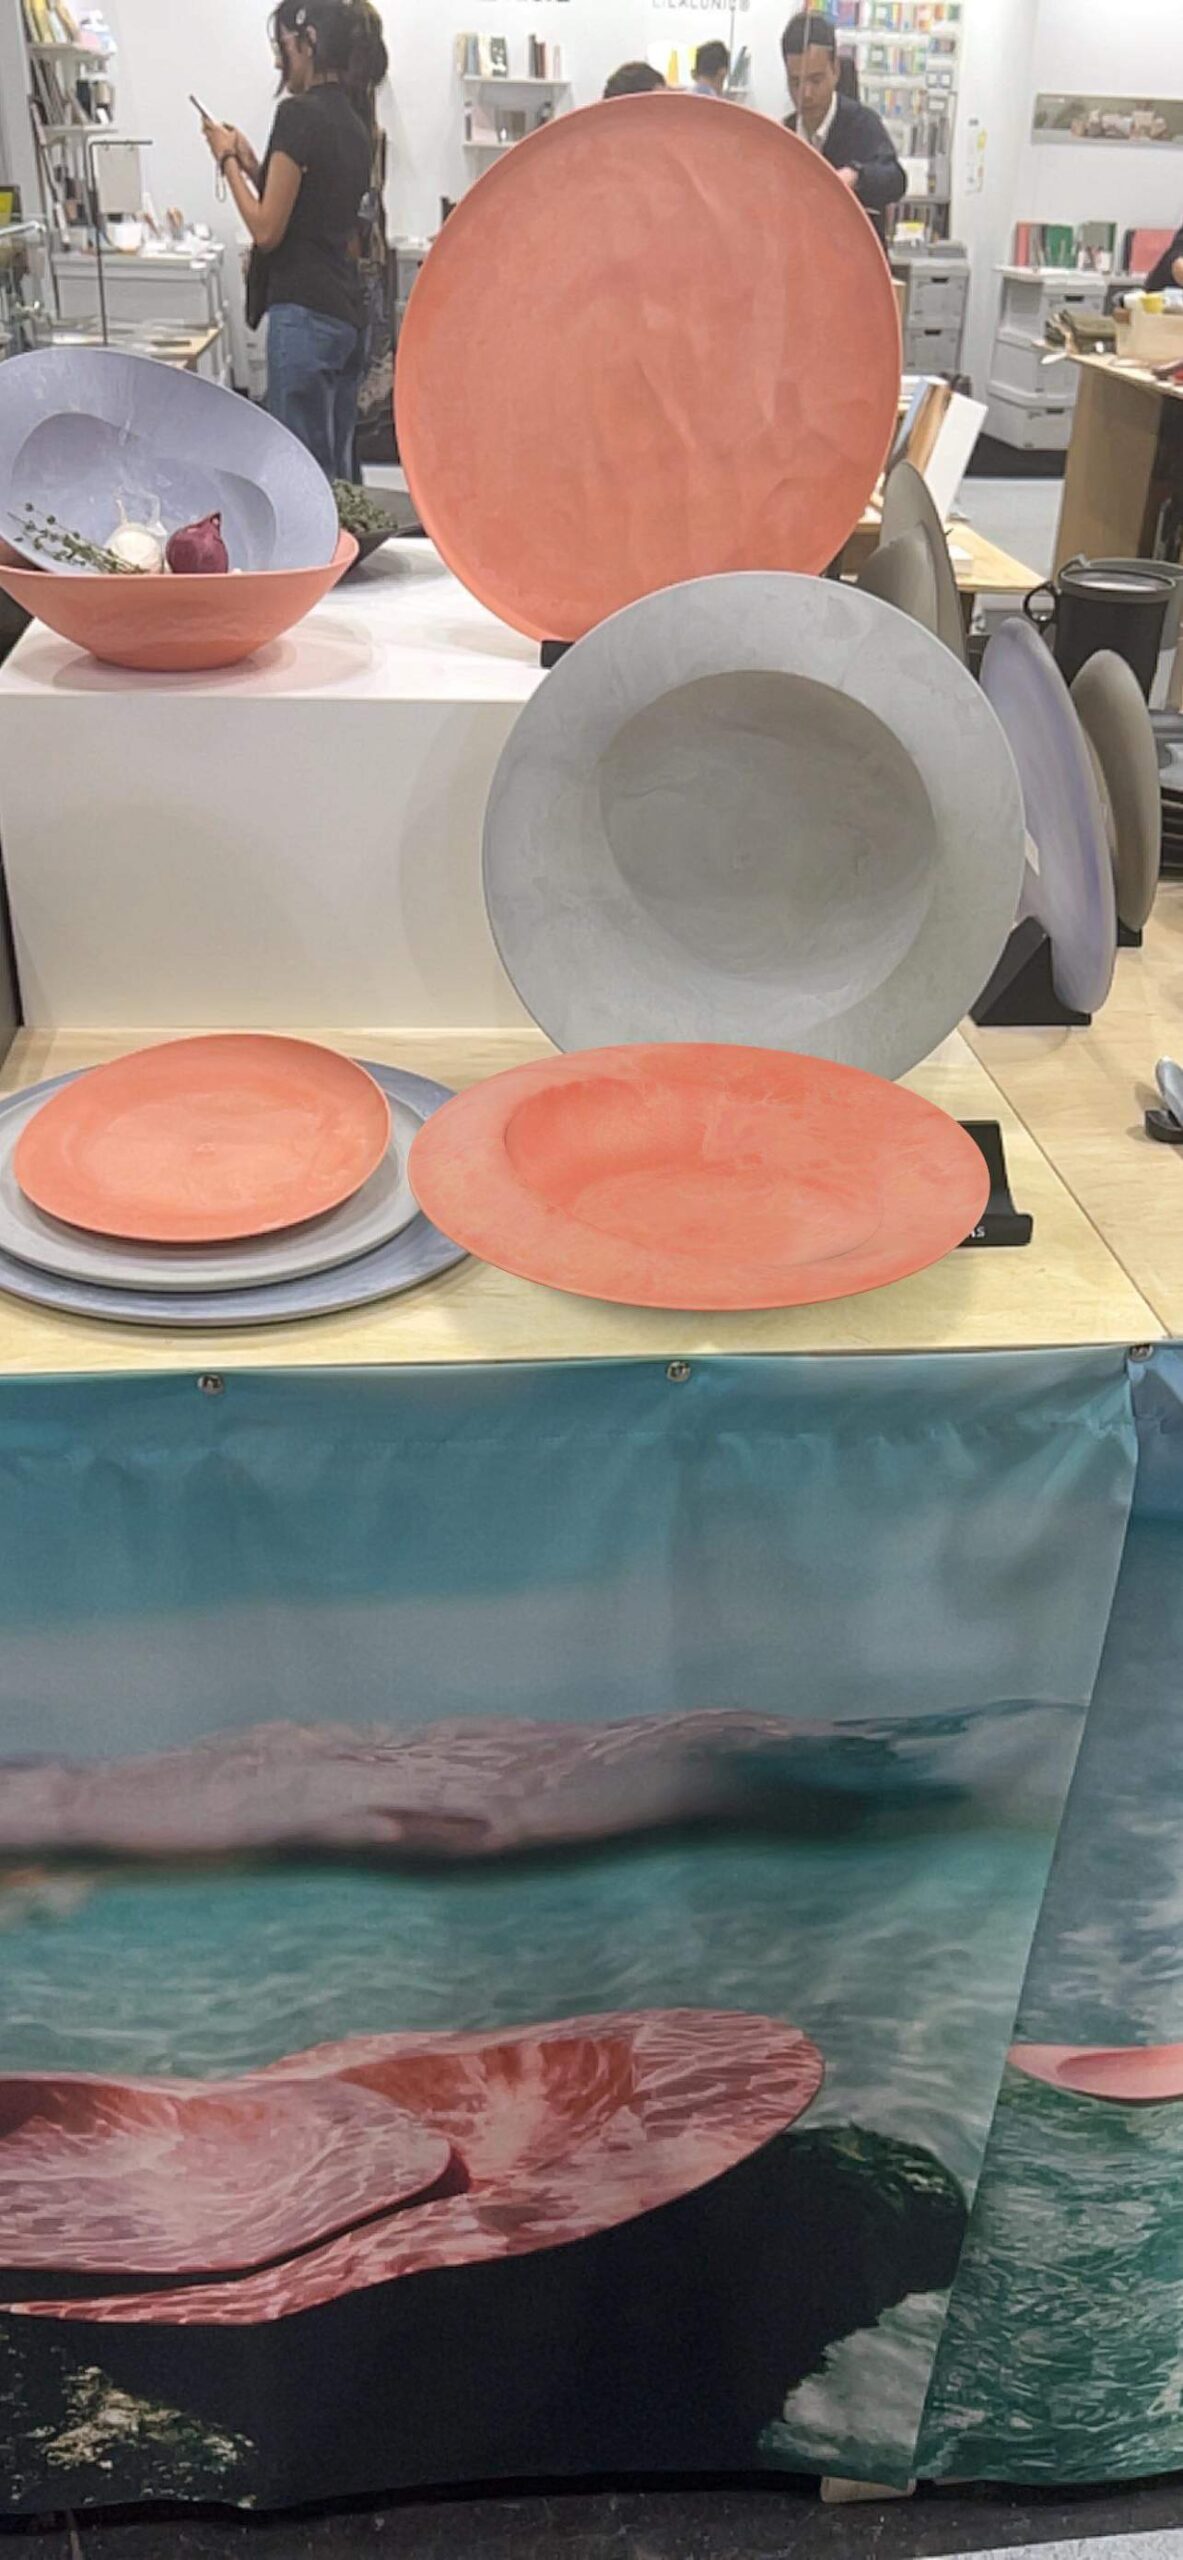 展示会場で海水シリーズに「深皿スクープ 海水 コーラルピンク」のARを並べて表示